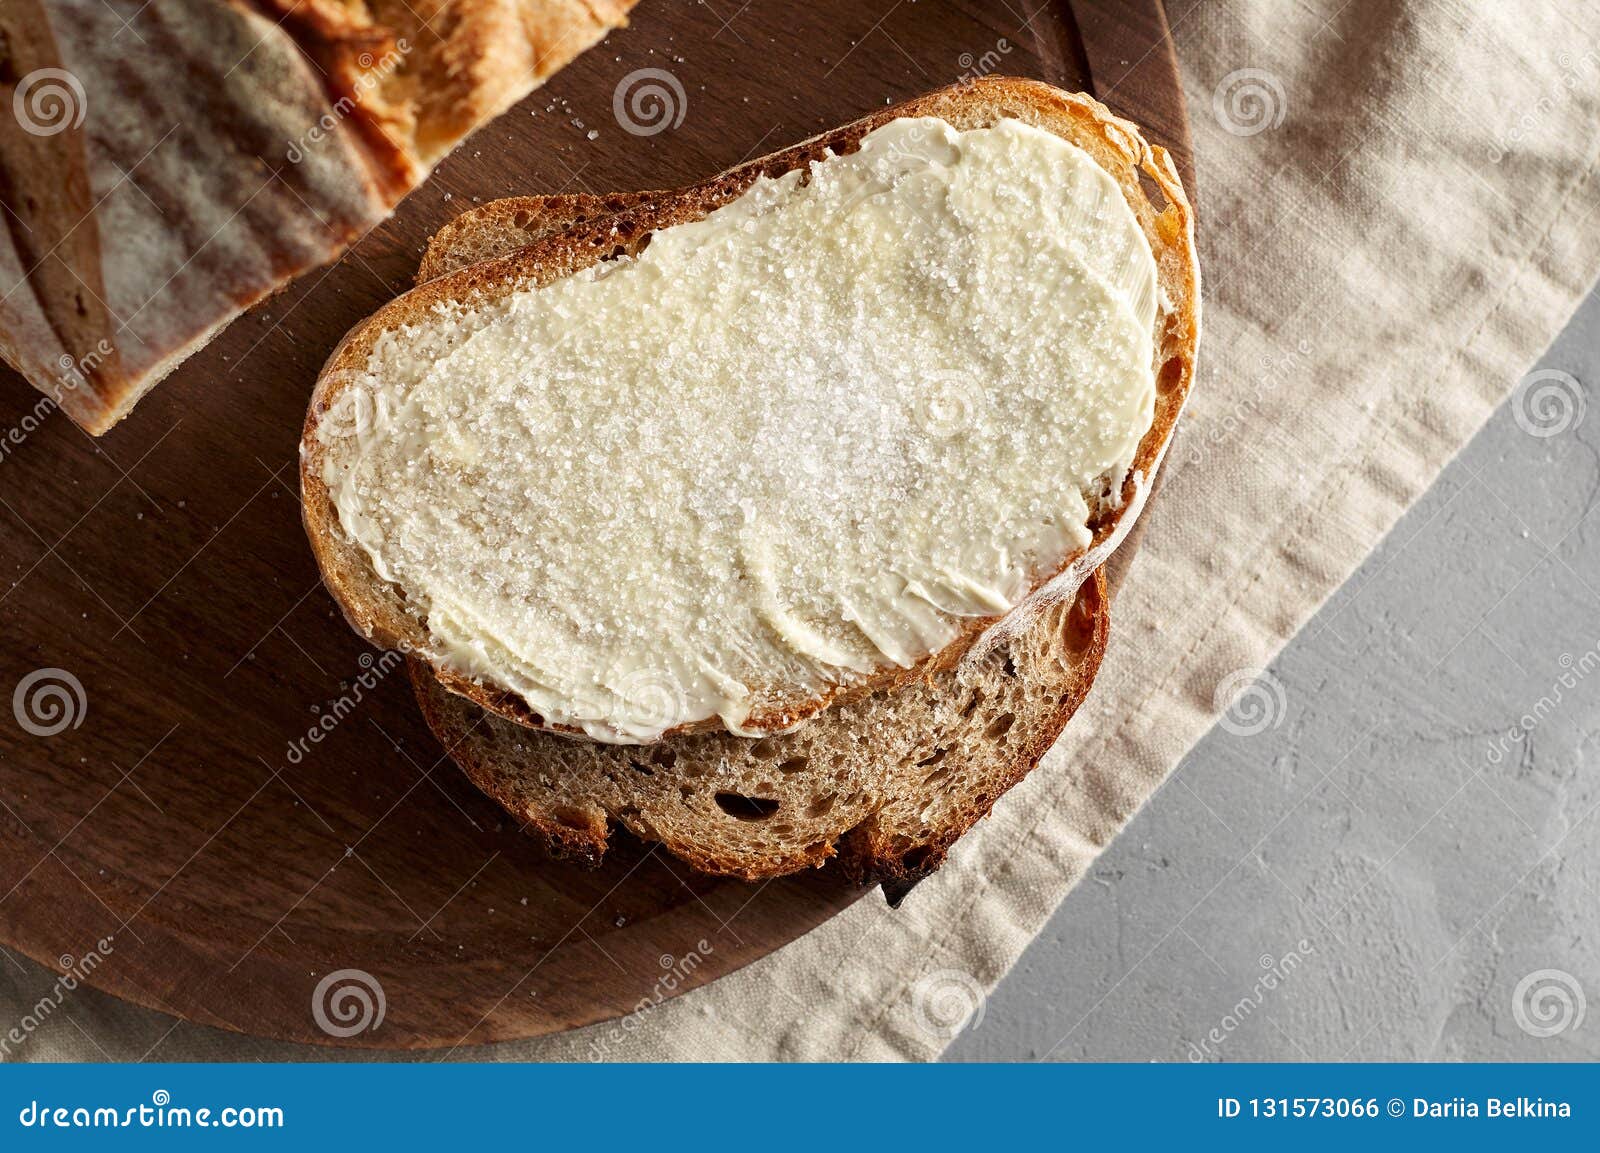 Черный хлеб сахар. Бутерброд хлеб масло сахар. Хлеб с маслом и сахаром. Бутерброд с маслом. Хлеб с маслом и солью.